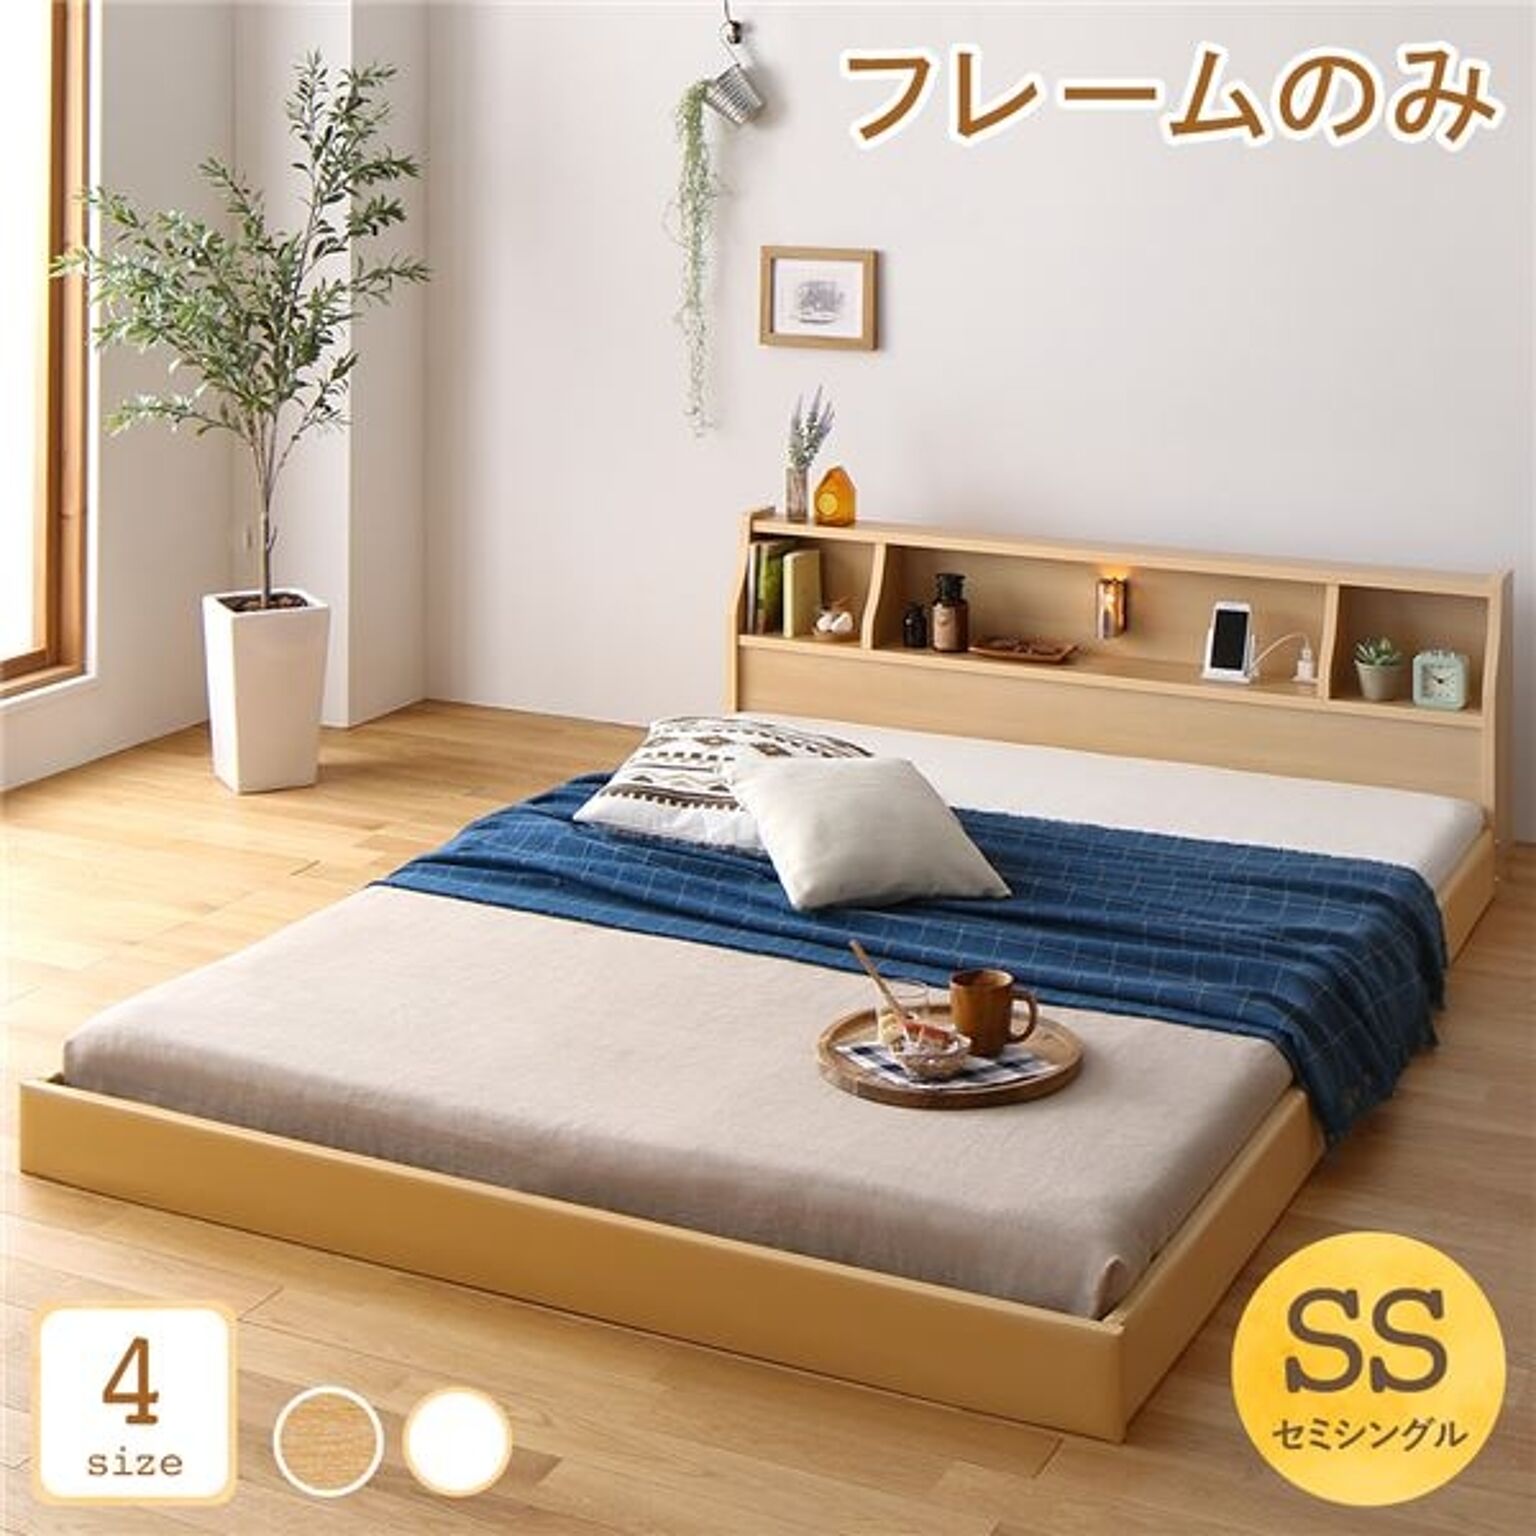 日本製 セミシングル ベッドフレーム 低床 フロア ロータイプ 木製